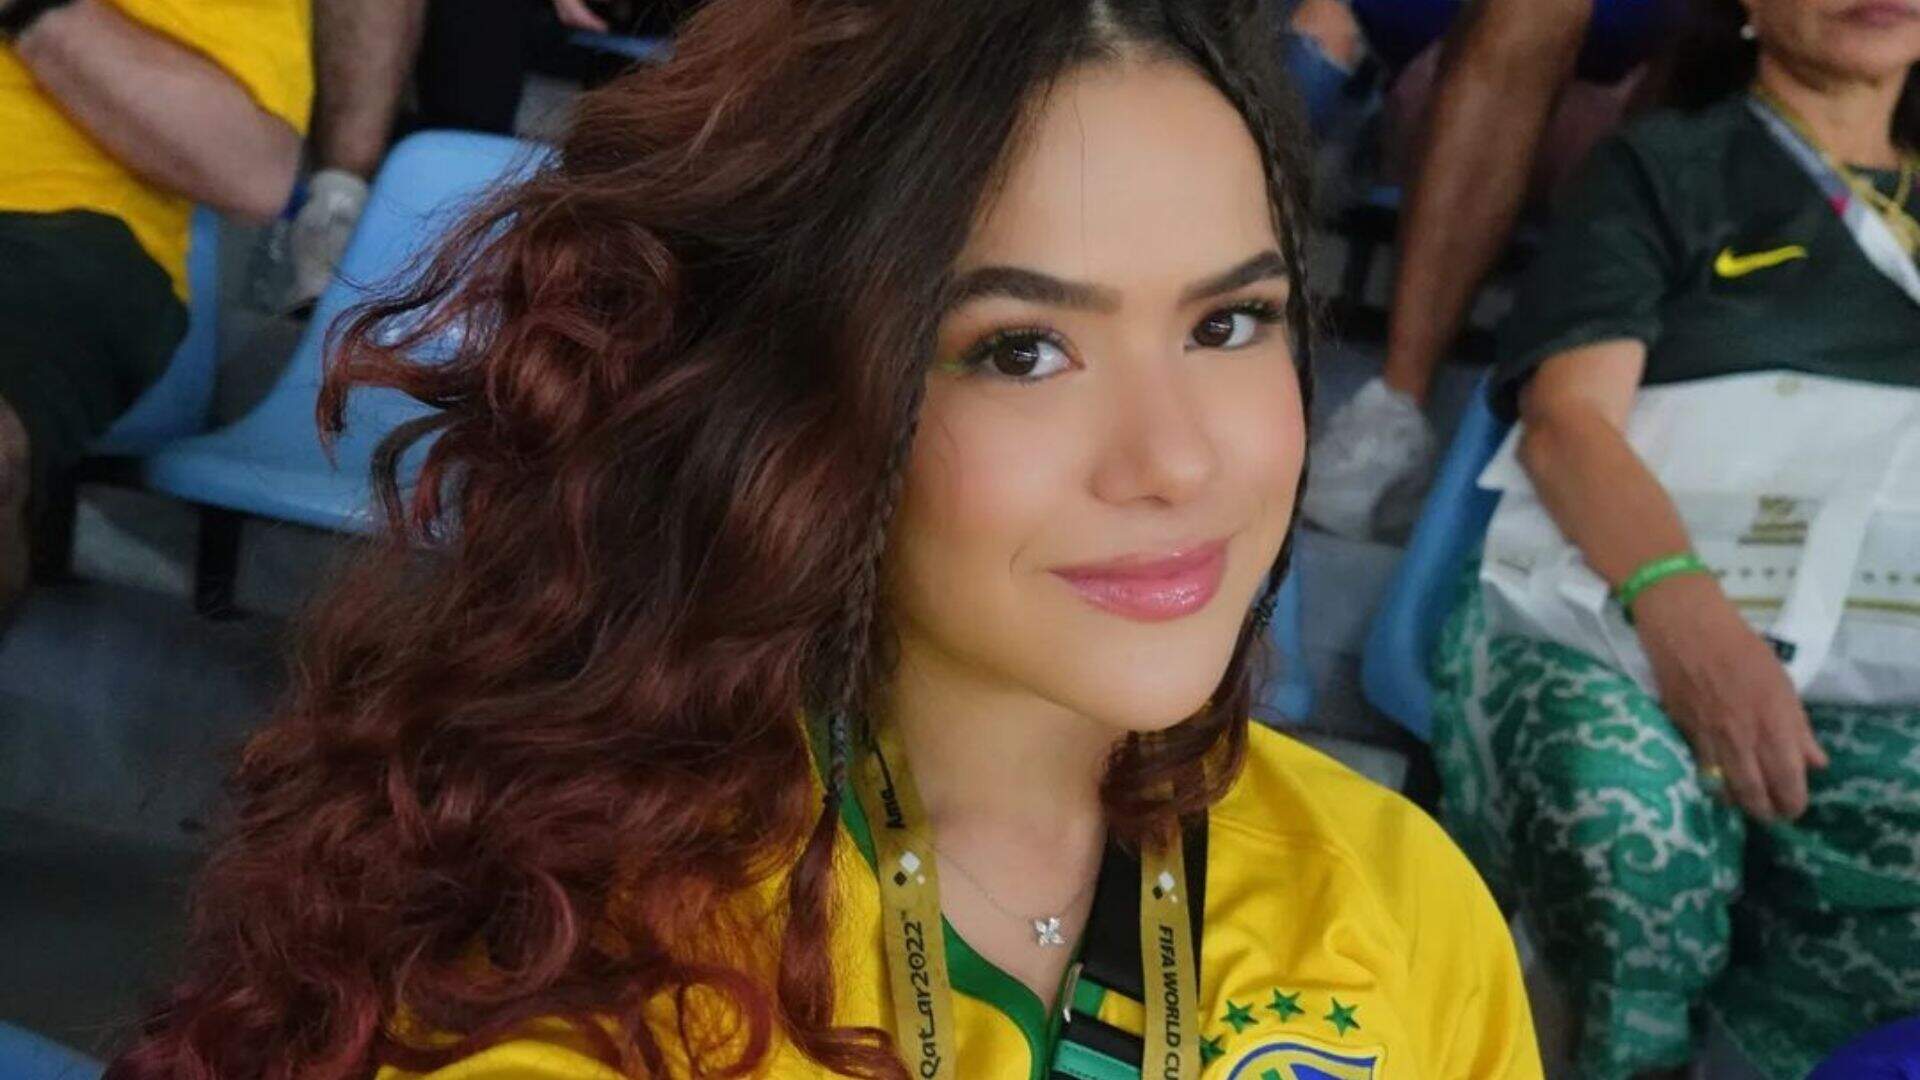 Maisa Silva revela que se apaixonou em aeroporto indo para o Catar: “Muito lindo” - Metropolitana FM